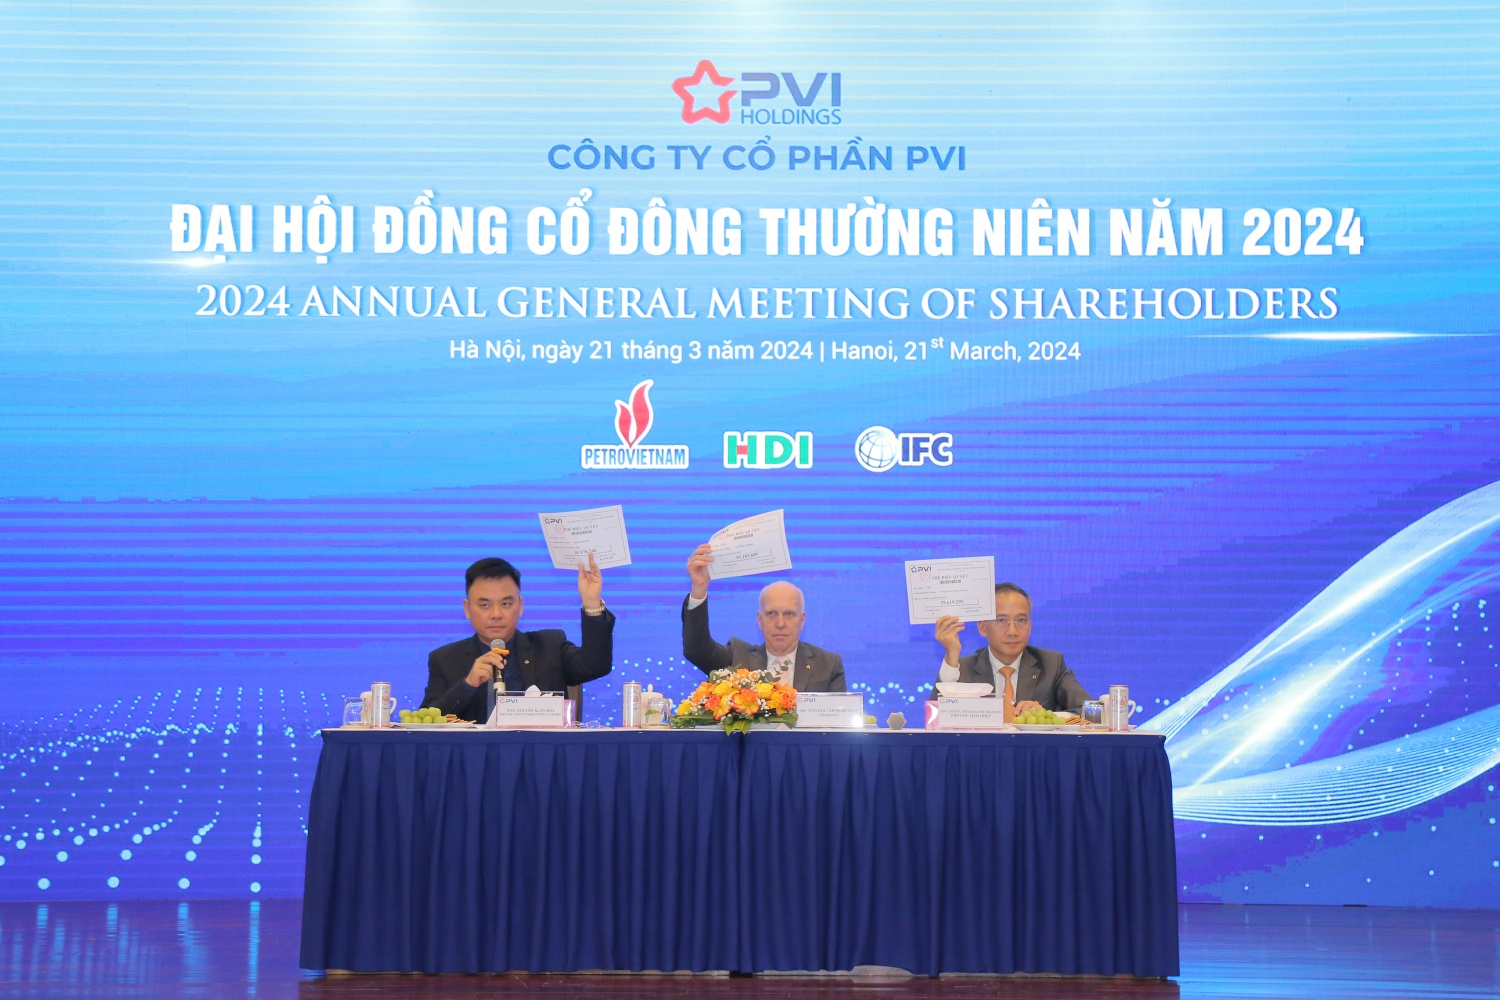 PVI tổ chức thành công Đại hội đồng cổ đông thường niên năm 2024